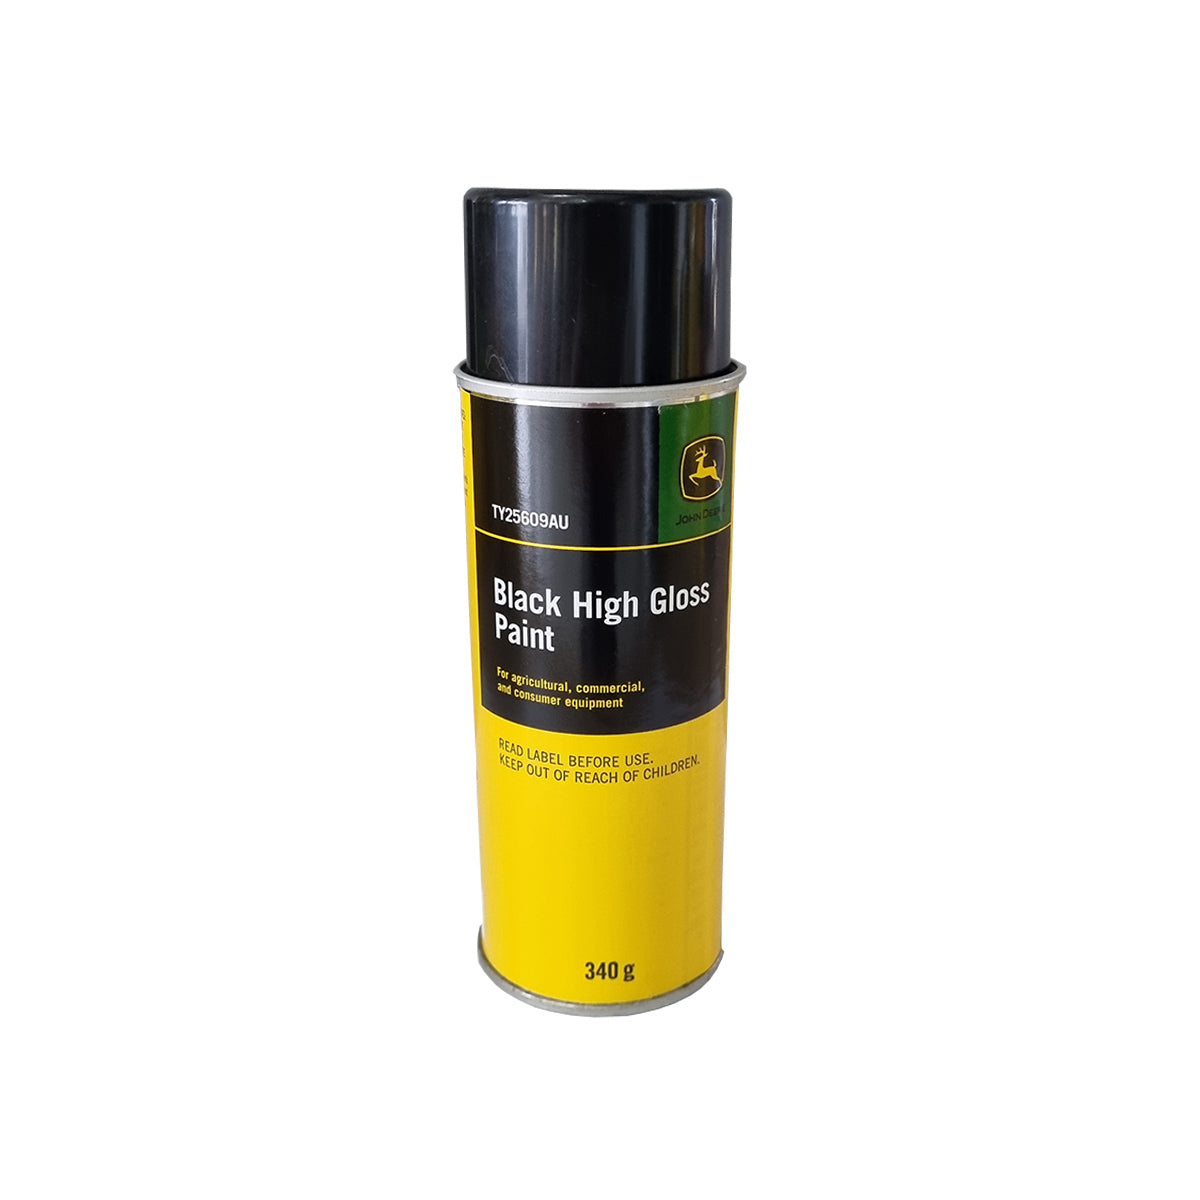 John Deere High Gloss Black Paint - 340g Spray Can